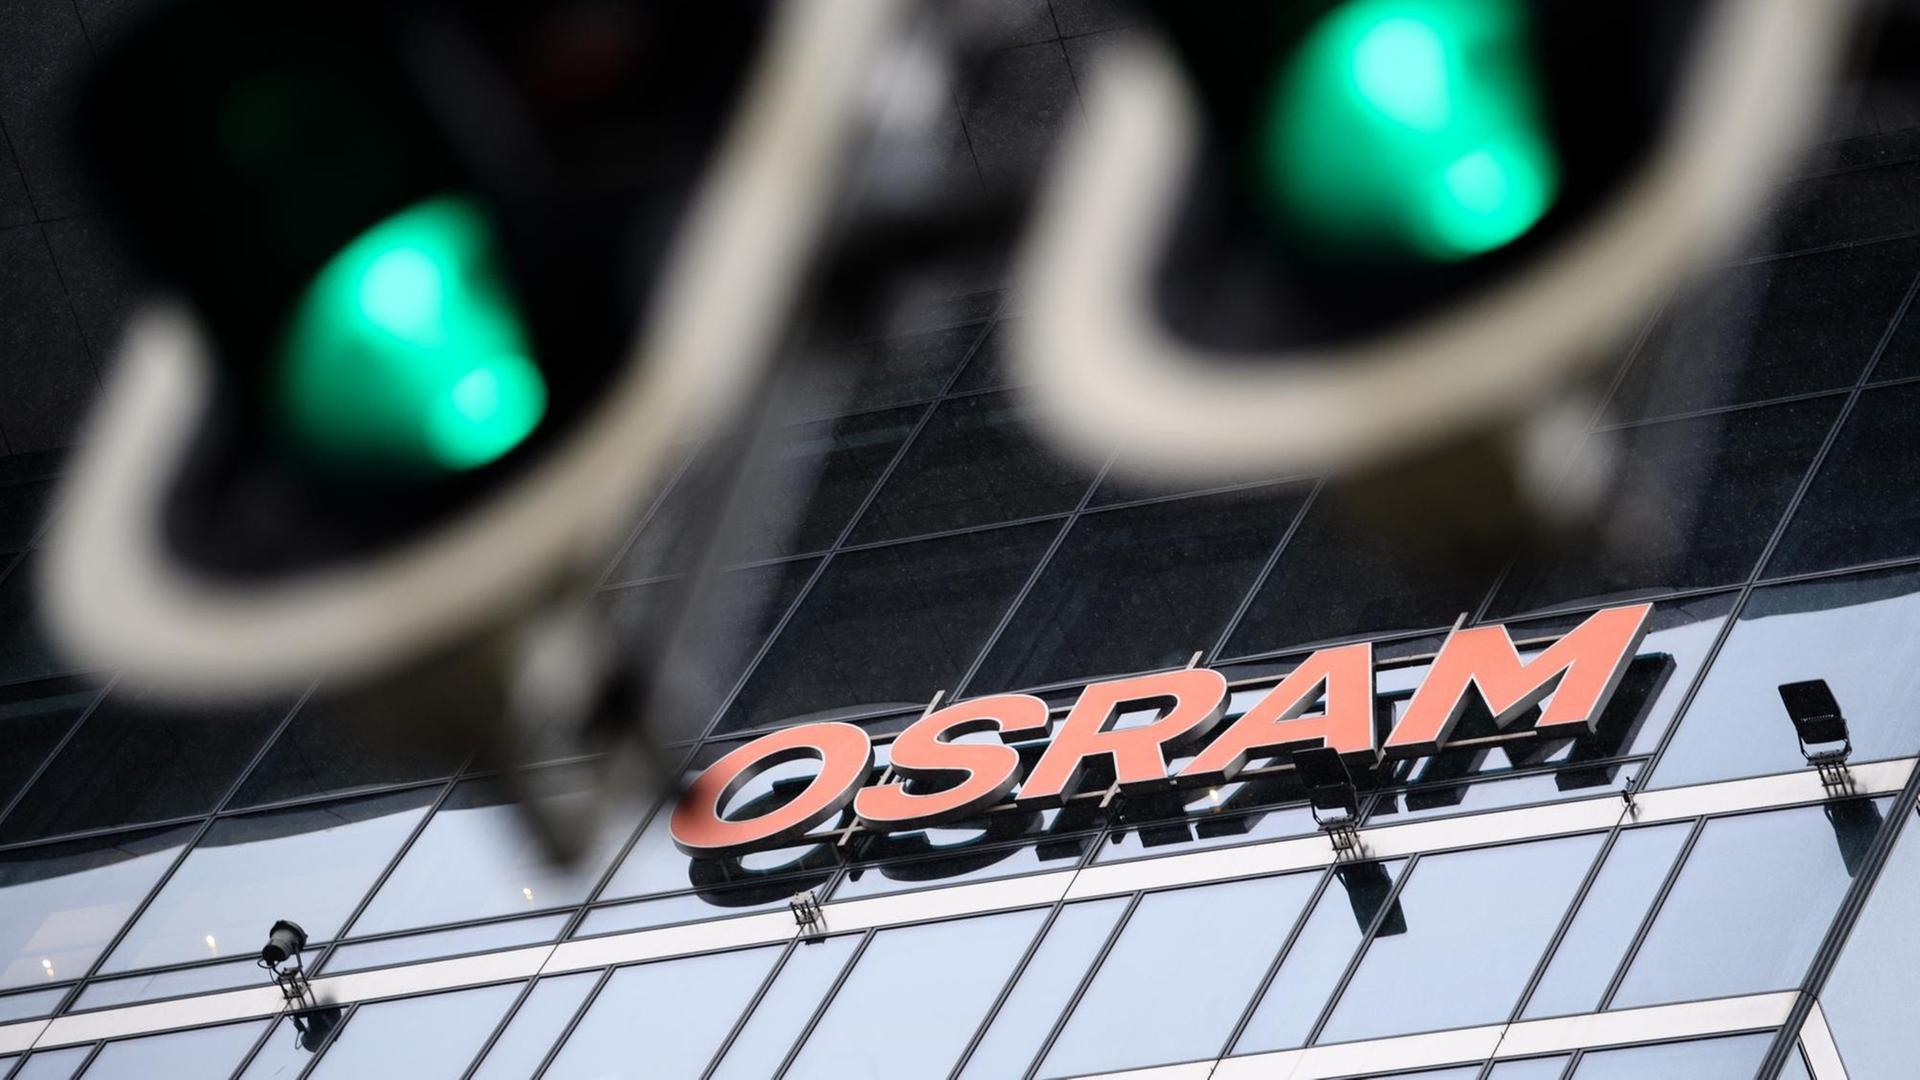 Zwei Ampeln zeigen vor der Zentrale der Firma Osram grünes Licht.